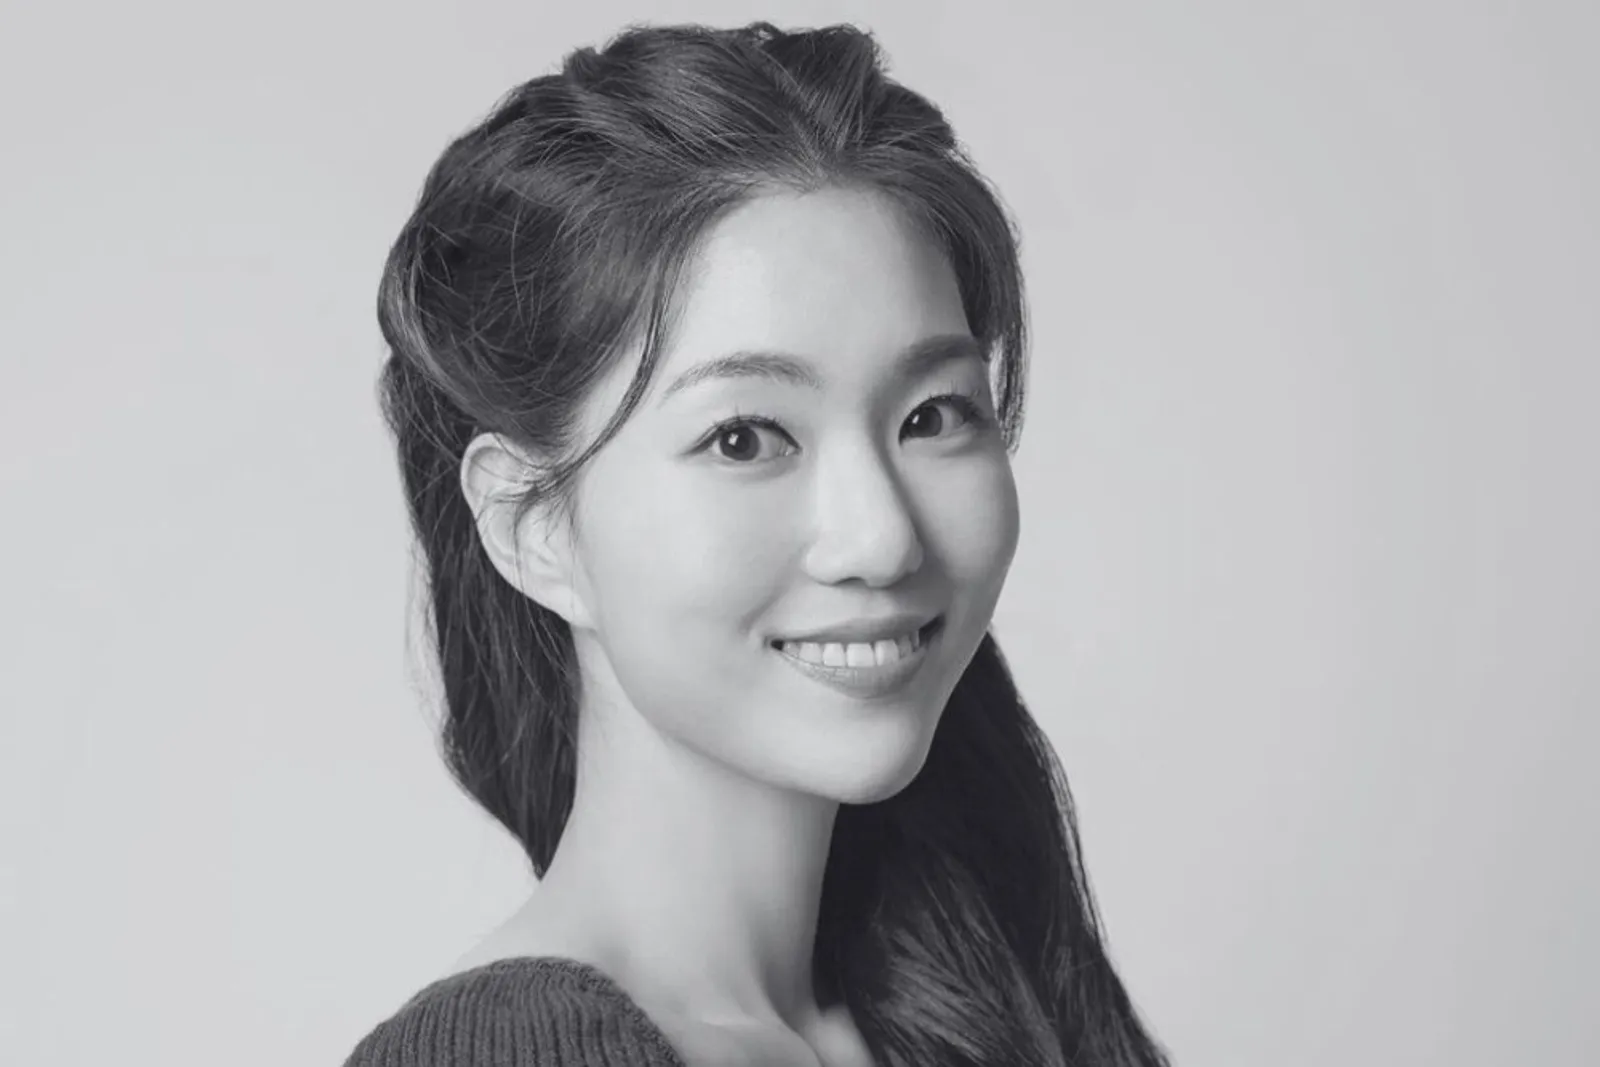 Aktris Park Soo Ryun Meninggal Usai Jatuh dari Tangga, Ini Profilnya